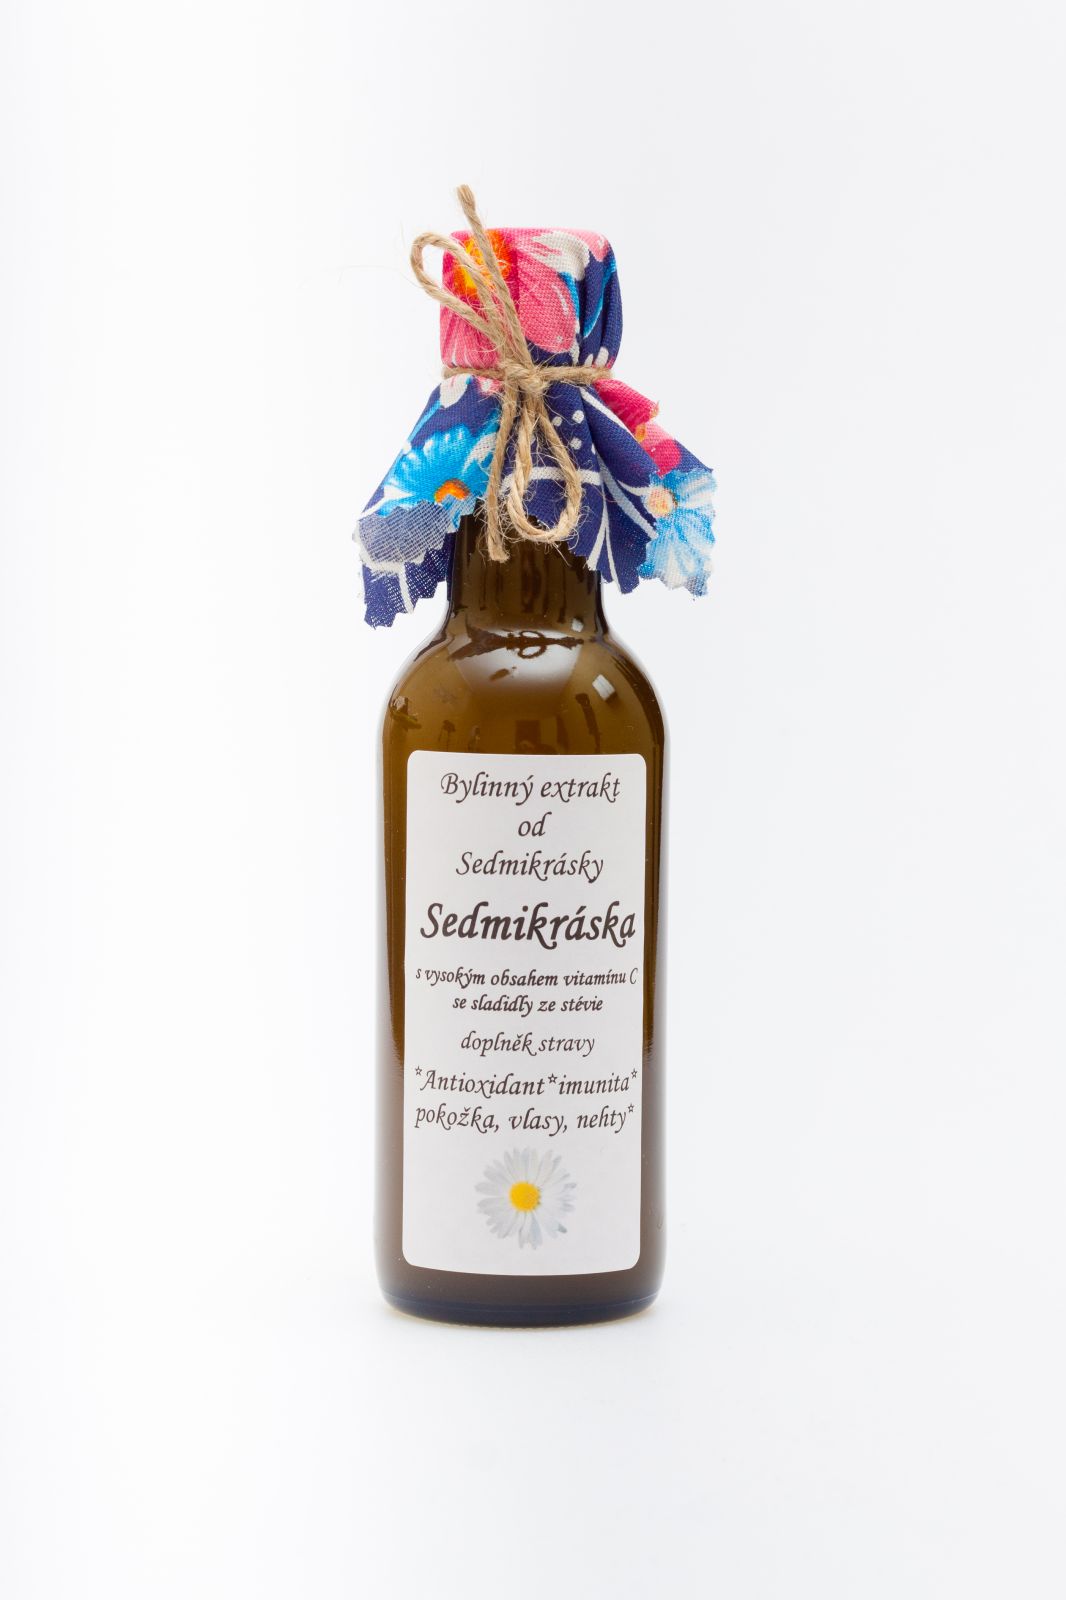 Sedmikráska bylinný extrakt Sedmikráska 250ml antioxidant, imunita, pokožka, vlasy a nechty Rodinná farma Sedmikráska